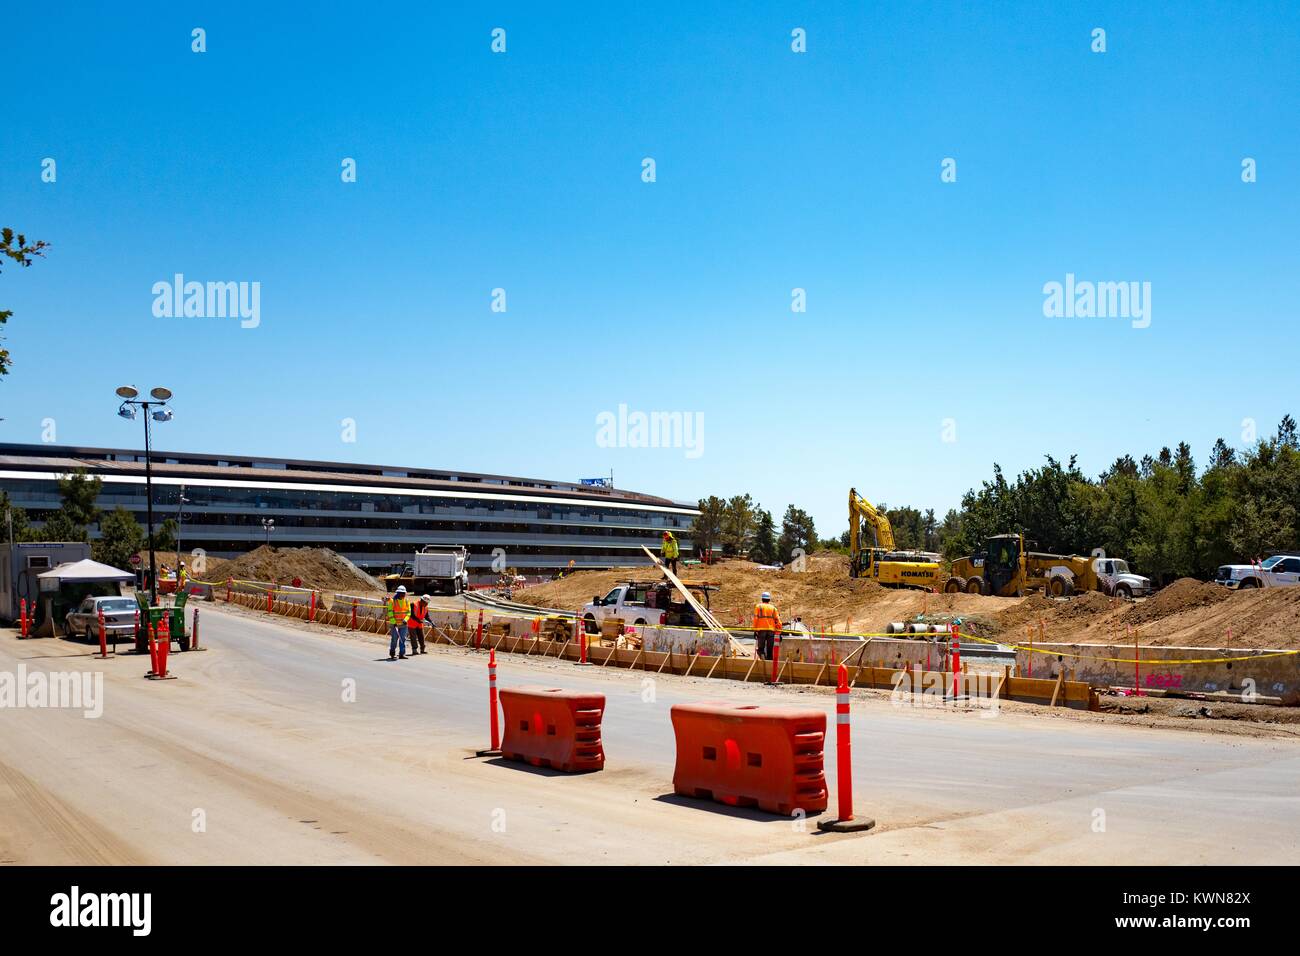 Site de construction avec les travailleurs de la construction et de l'équipement, ainsi qu'une partie du bâtiment principal, à l'entrée de la rue Wolfe Apple Park, connu familièrement comme "le vaisseau spatial", le nouveau quartier général d'Apple Inc dans la Silicon Valley ville de Cupertino, Californie, 25 juillet 2017. Banque D'Images